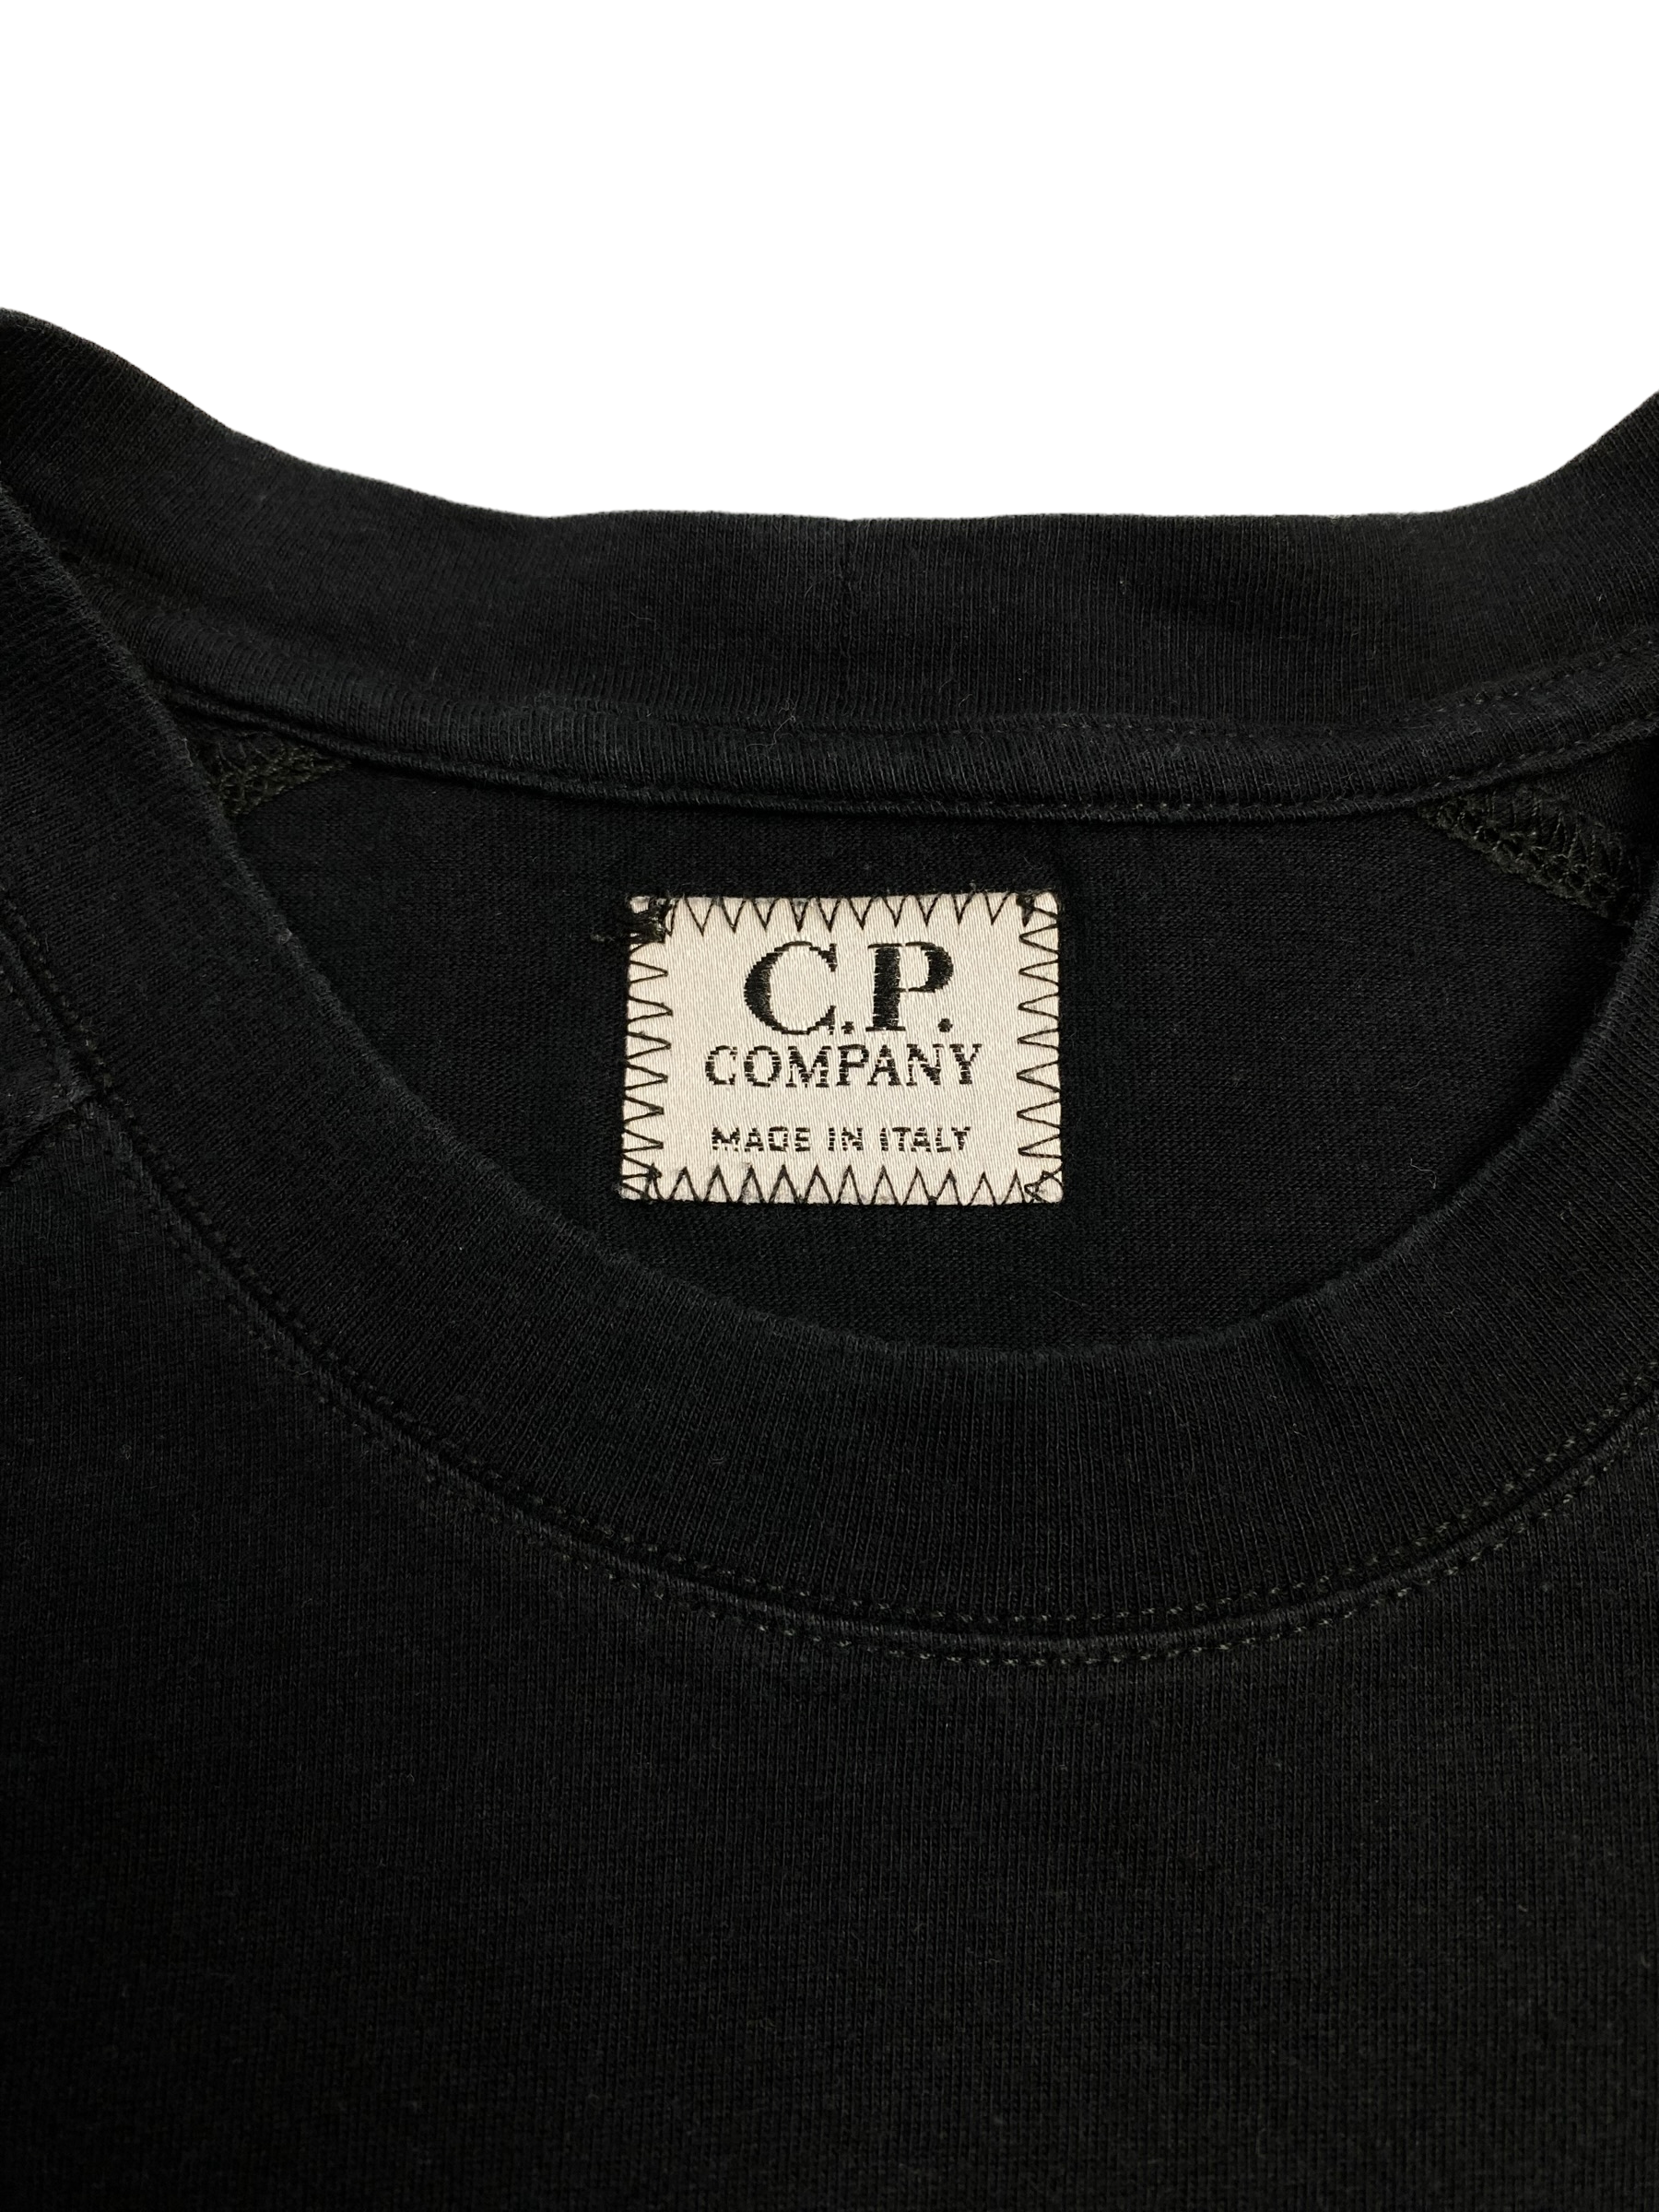 Camiseta C.P. Company - L